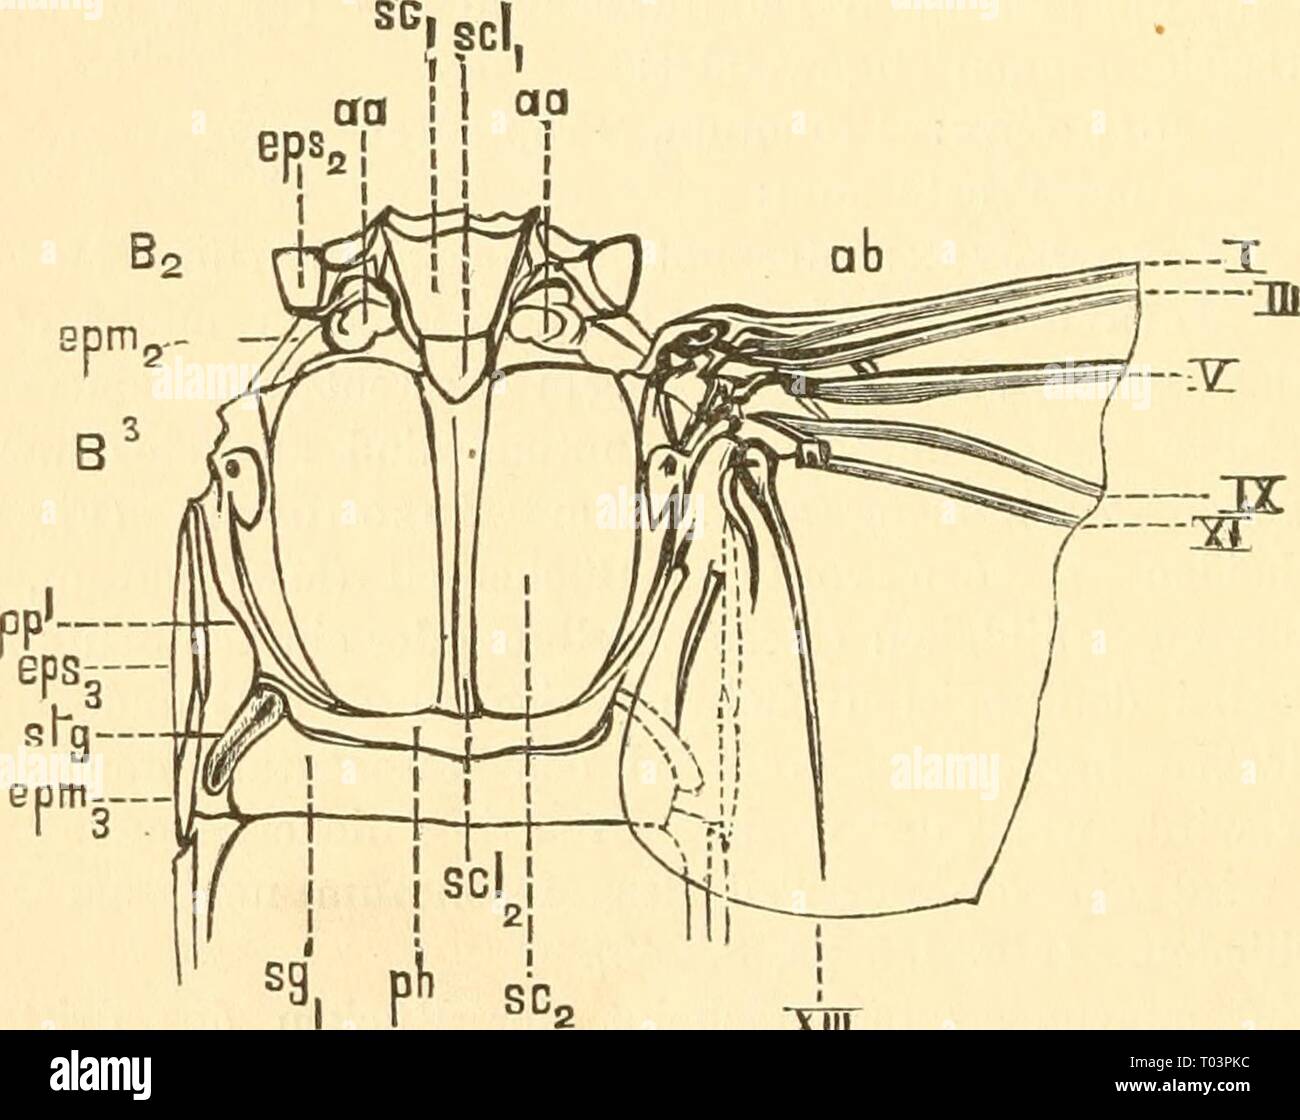 Einführung in die Kenntnis der Insekten . einfhrungindie00kolb Anno: [1889]-1893 240 II. Der Körper der Insekten. Pièces der Brustringe. Un den Pleuren des Metathorax findet sich noch zwischen Epistemum dem und Epimeron einerseits und der Flügelwurzel anderseits Nebenseitenstück eia, die Parapleure (ppl). Die Pleuren sind je nach der Ordnung oder Familie verschieden ausgebildet. Oft verschmelzen am Prothorax die Episternen mit dem Stemum. (Fig. 152 st^). Der Brustschild, welcher je nach dem Prosternum Brustringe (STI), Mesosternum (ST 2) und Metastemum (ST 3) genamit wird, er- scheint als mitt Foto Stock